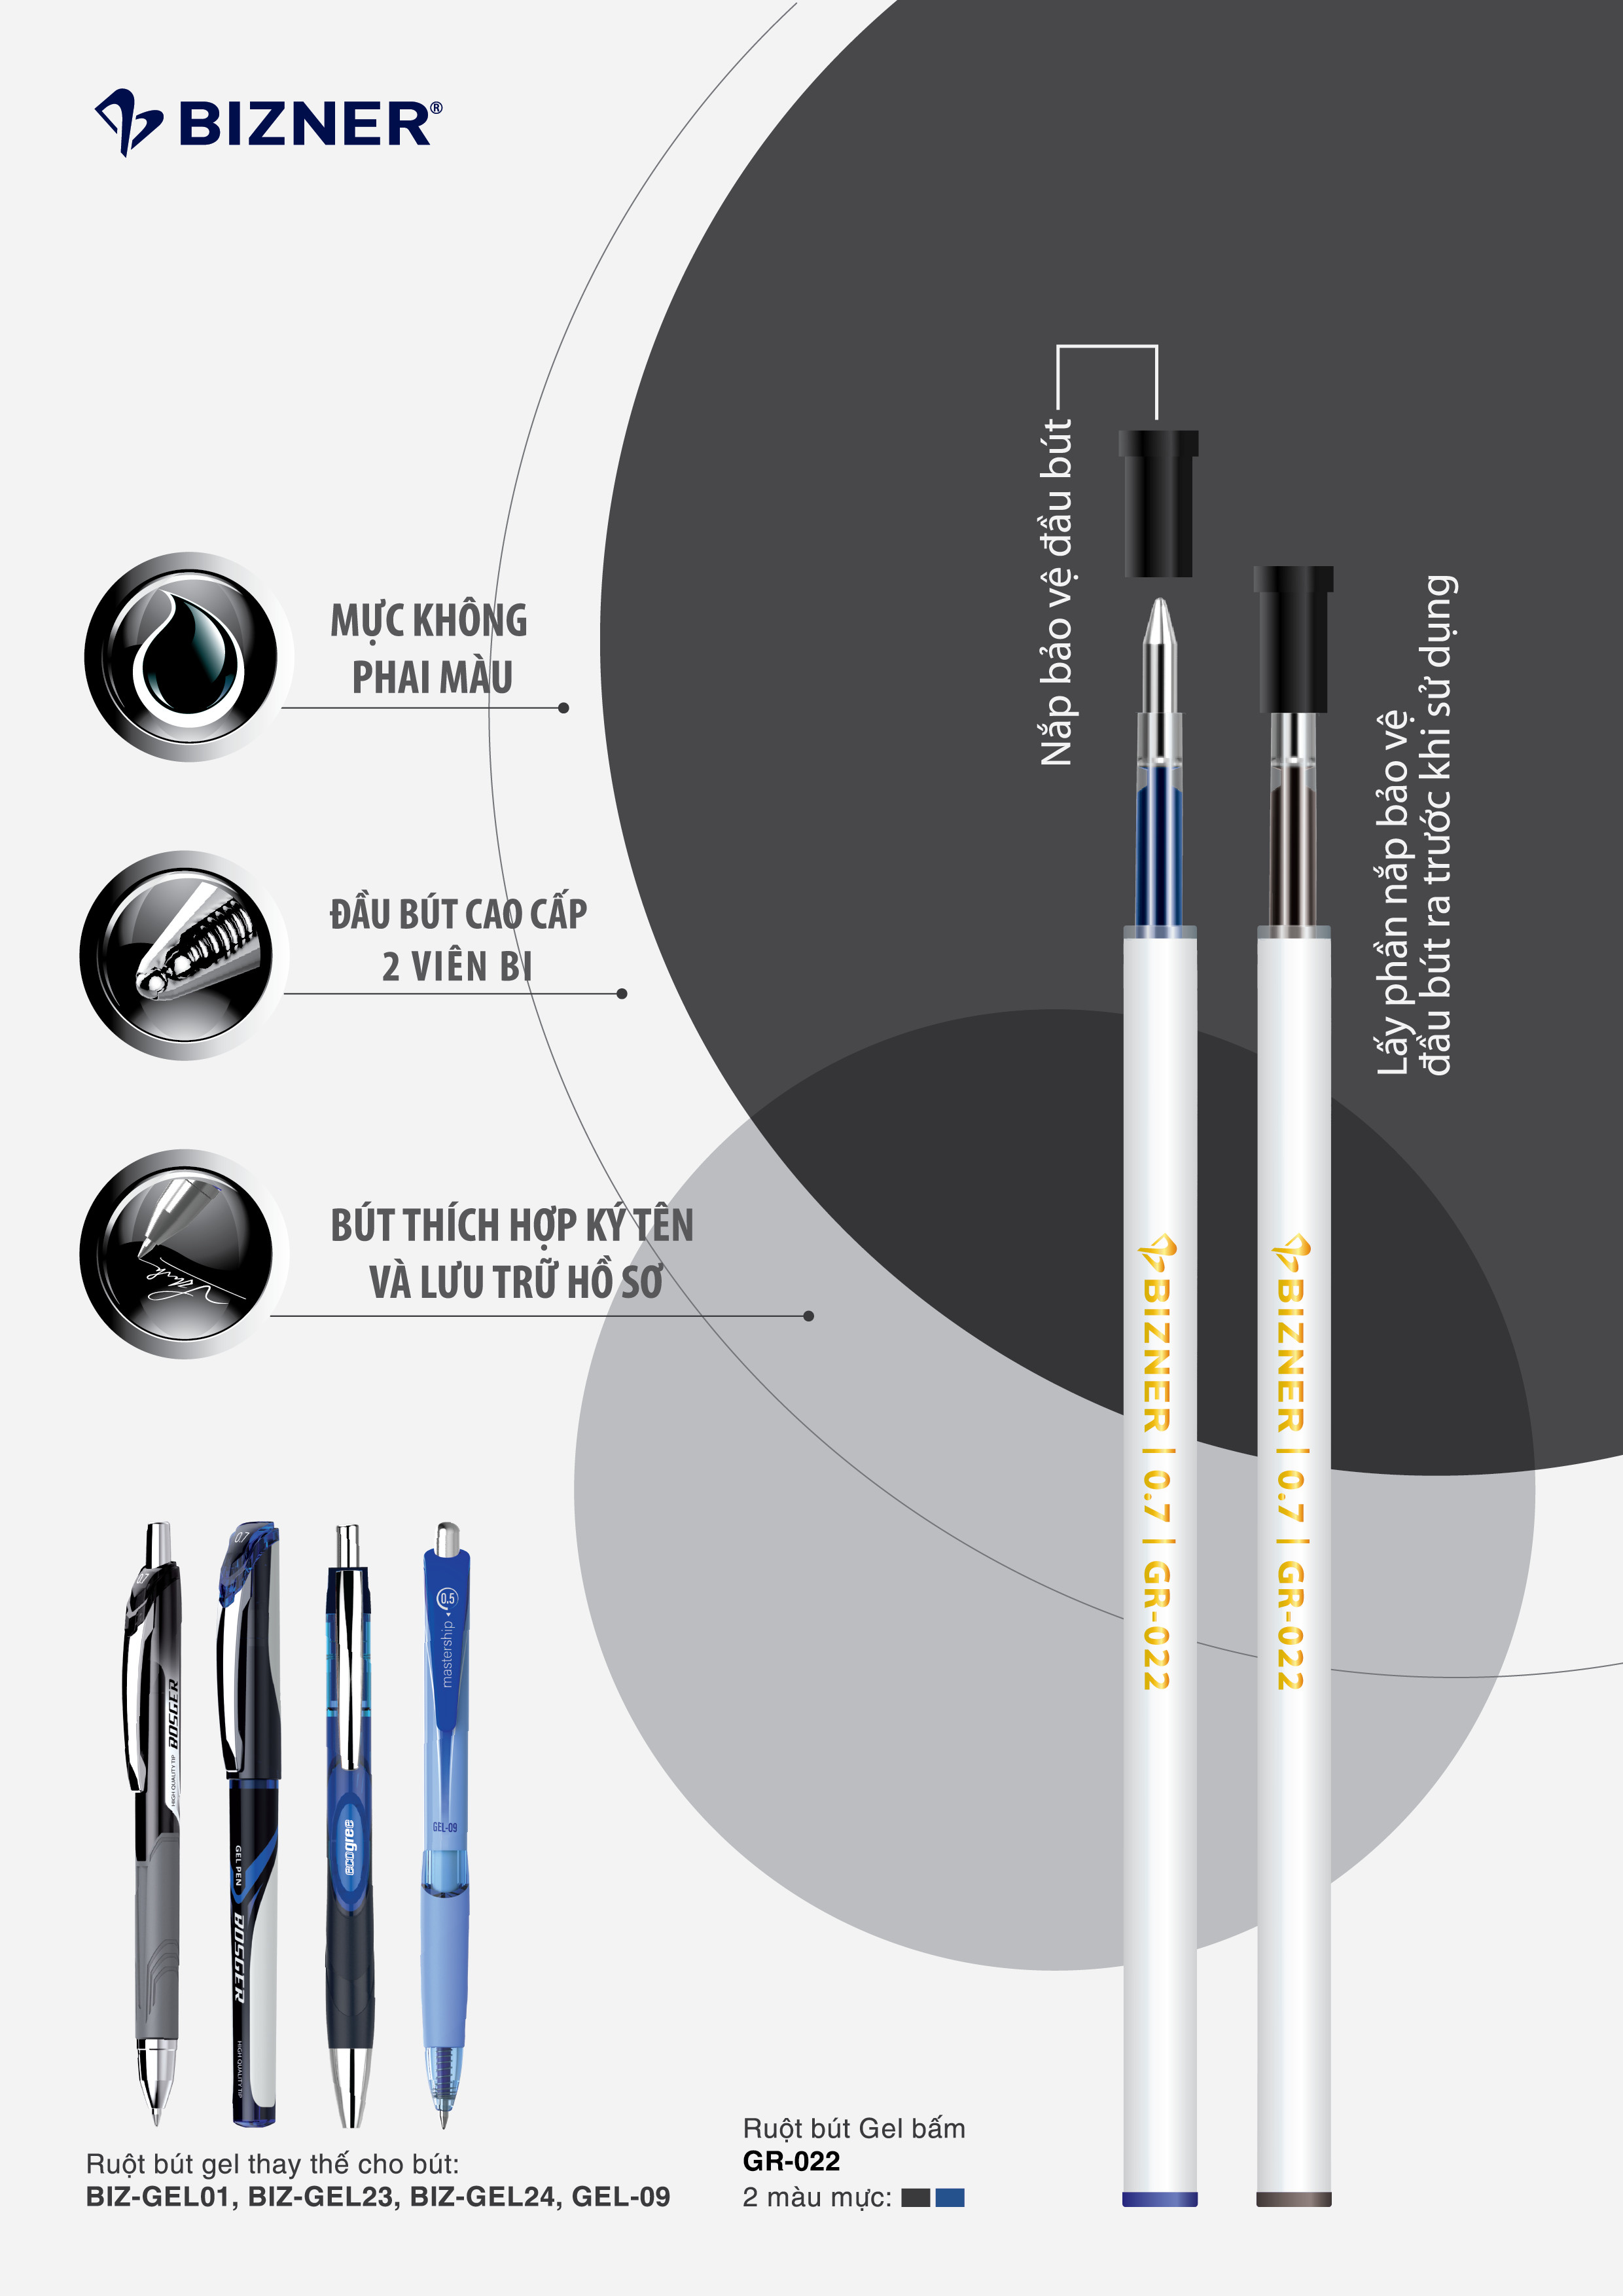 Ruột bút gel bấm Bizner GR-022 - Đầu bút cao cấp 2 viên bi (Dùng cho các loại bút gel bấm Thiên Long) - Vỉ 1 ruột